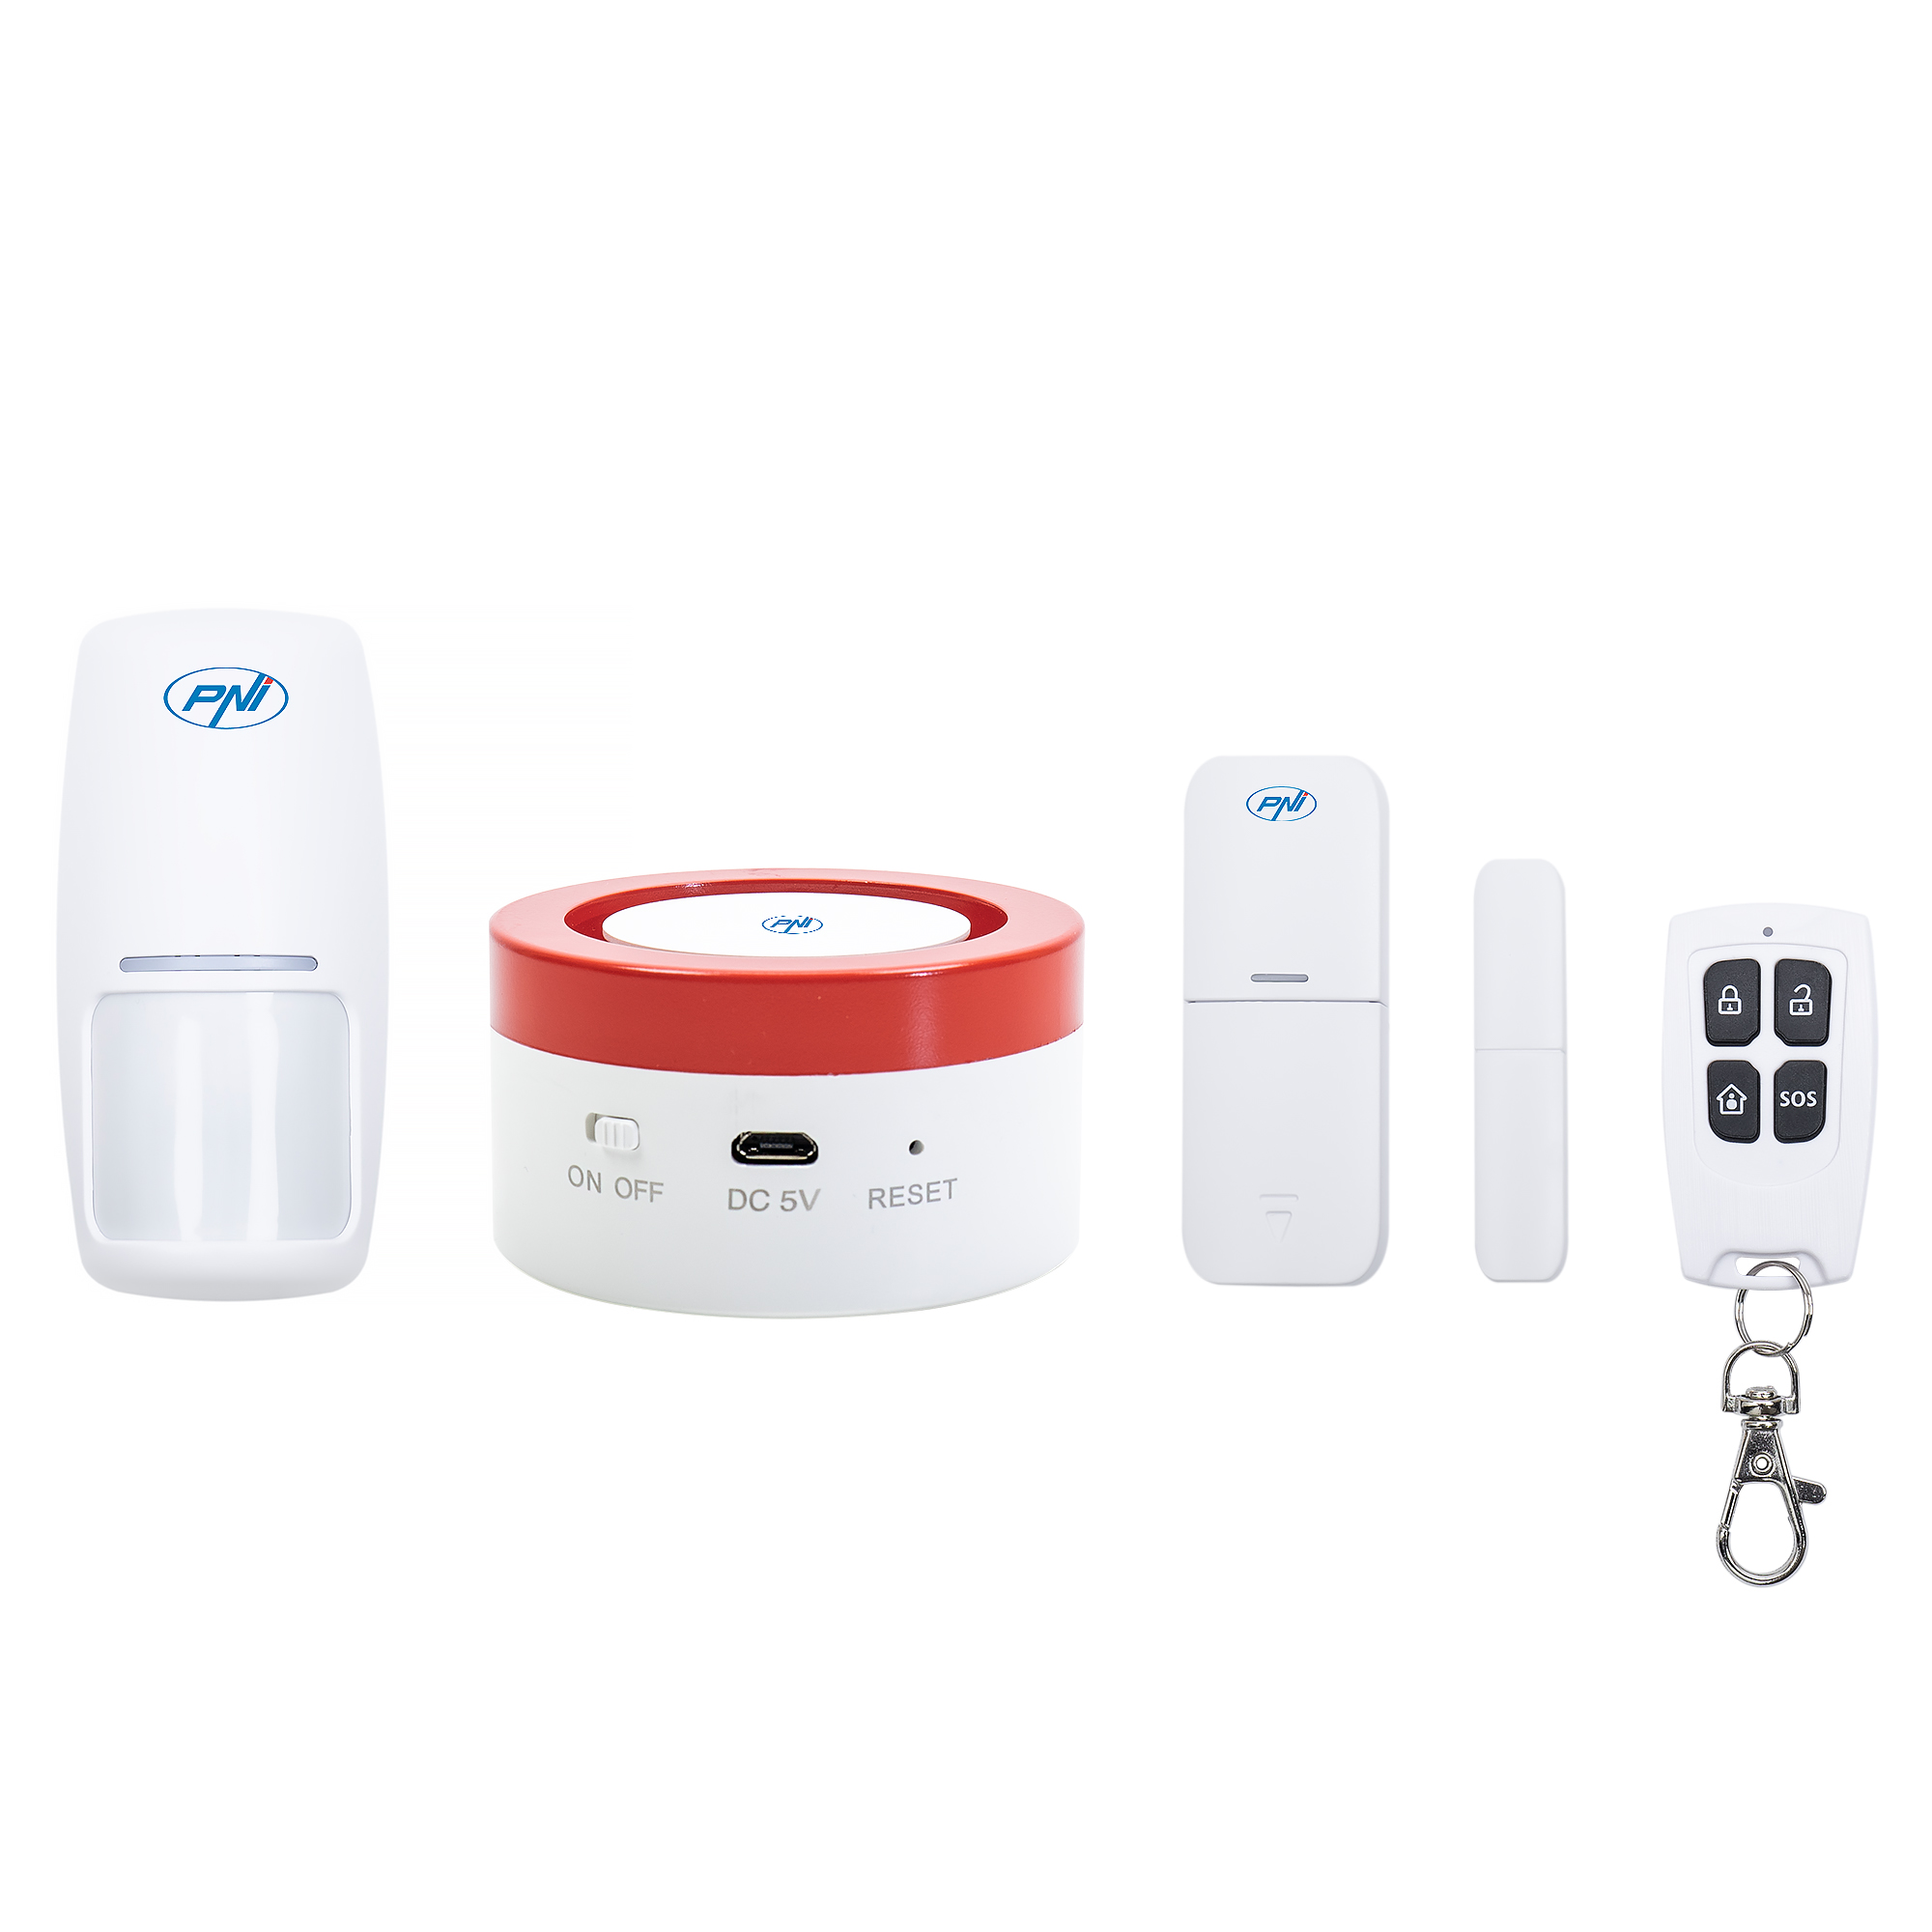 Sistem de alarma wireless PNI Safe House PG600LR, sistem inteligent de securitate pentru casa, conectare wireless, alarma antiefractie, alarma fara fir, alerta inteligenta prin aplicatia TUYA iOS / An image11